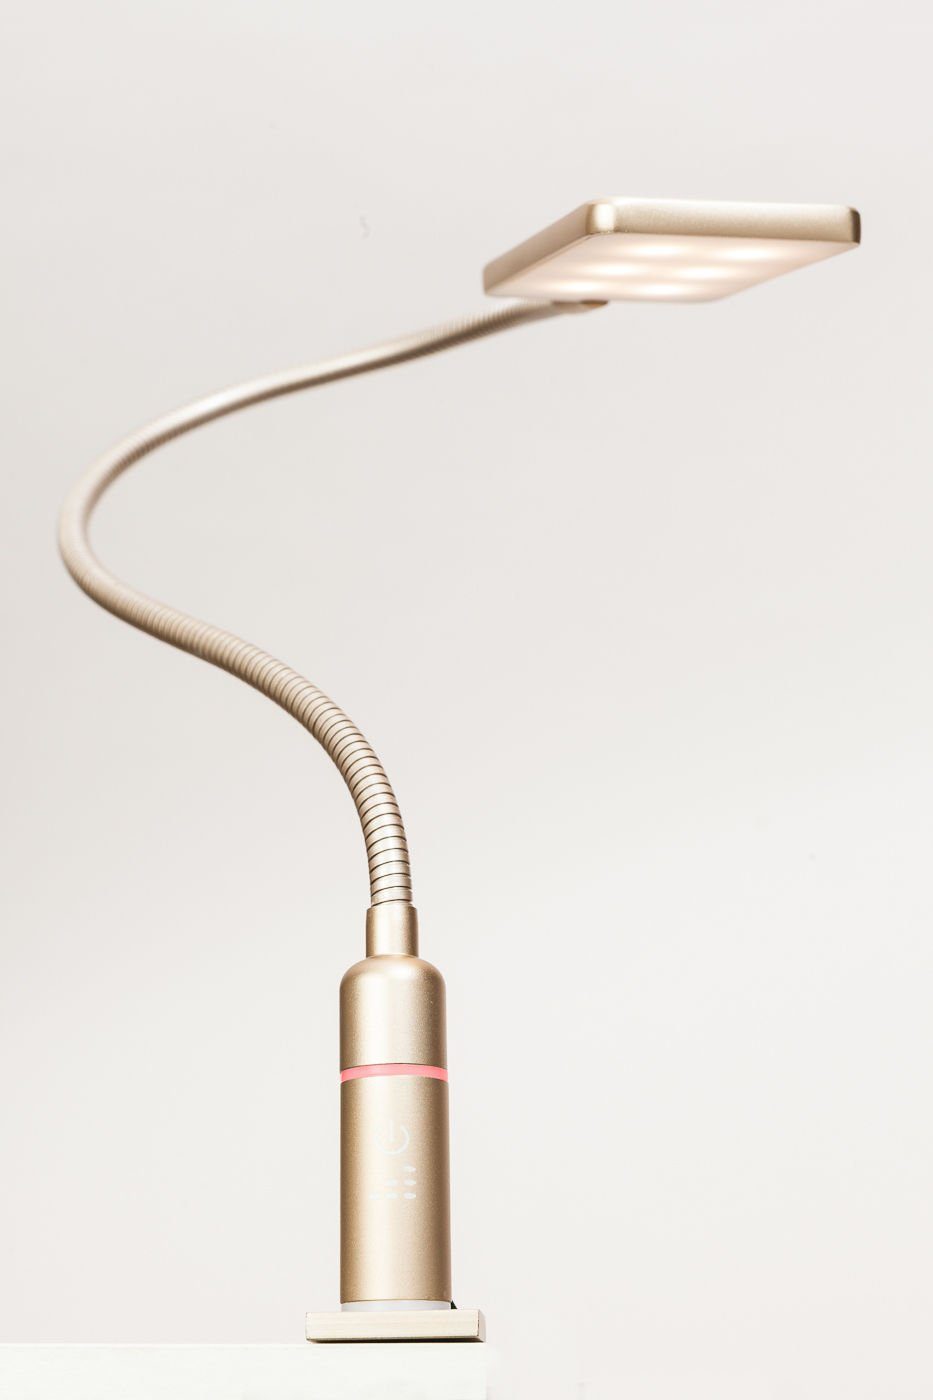 Leseleuchte matt, Bettleuchte Set 4W messing LED warmweiß 1er flexibel, kalb Bettleuchte Leselampe Nachttischlampe